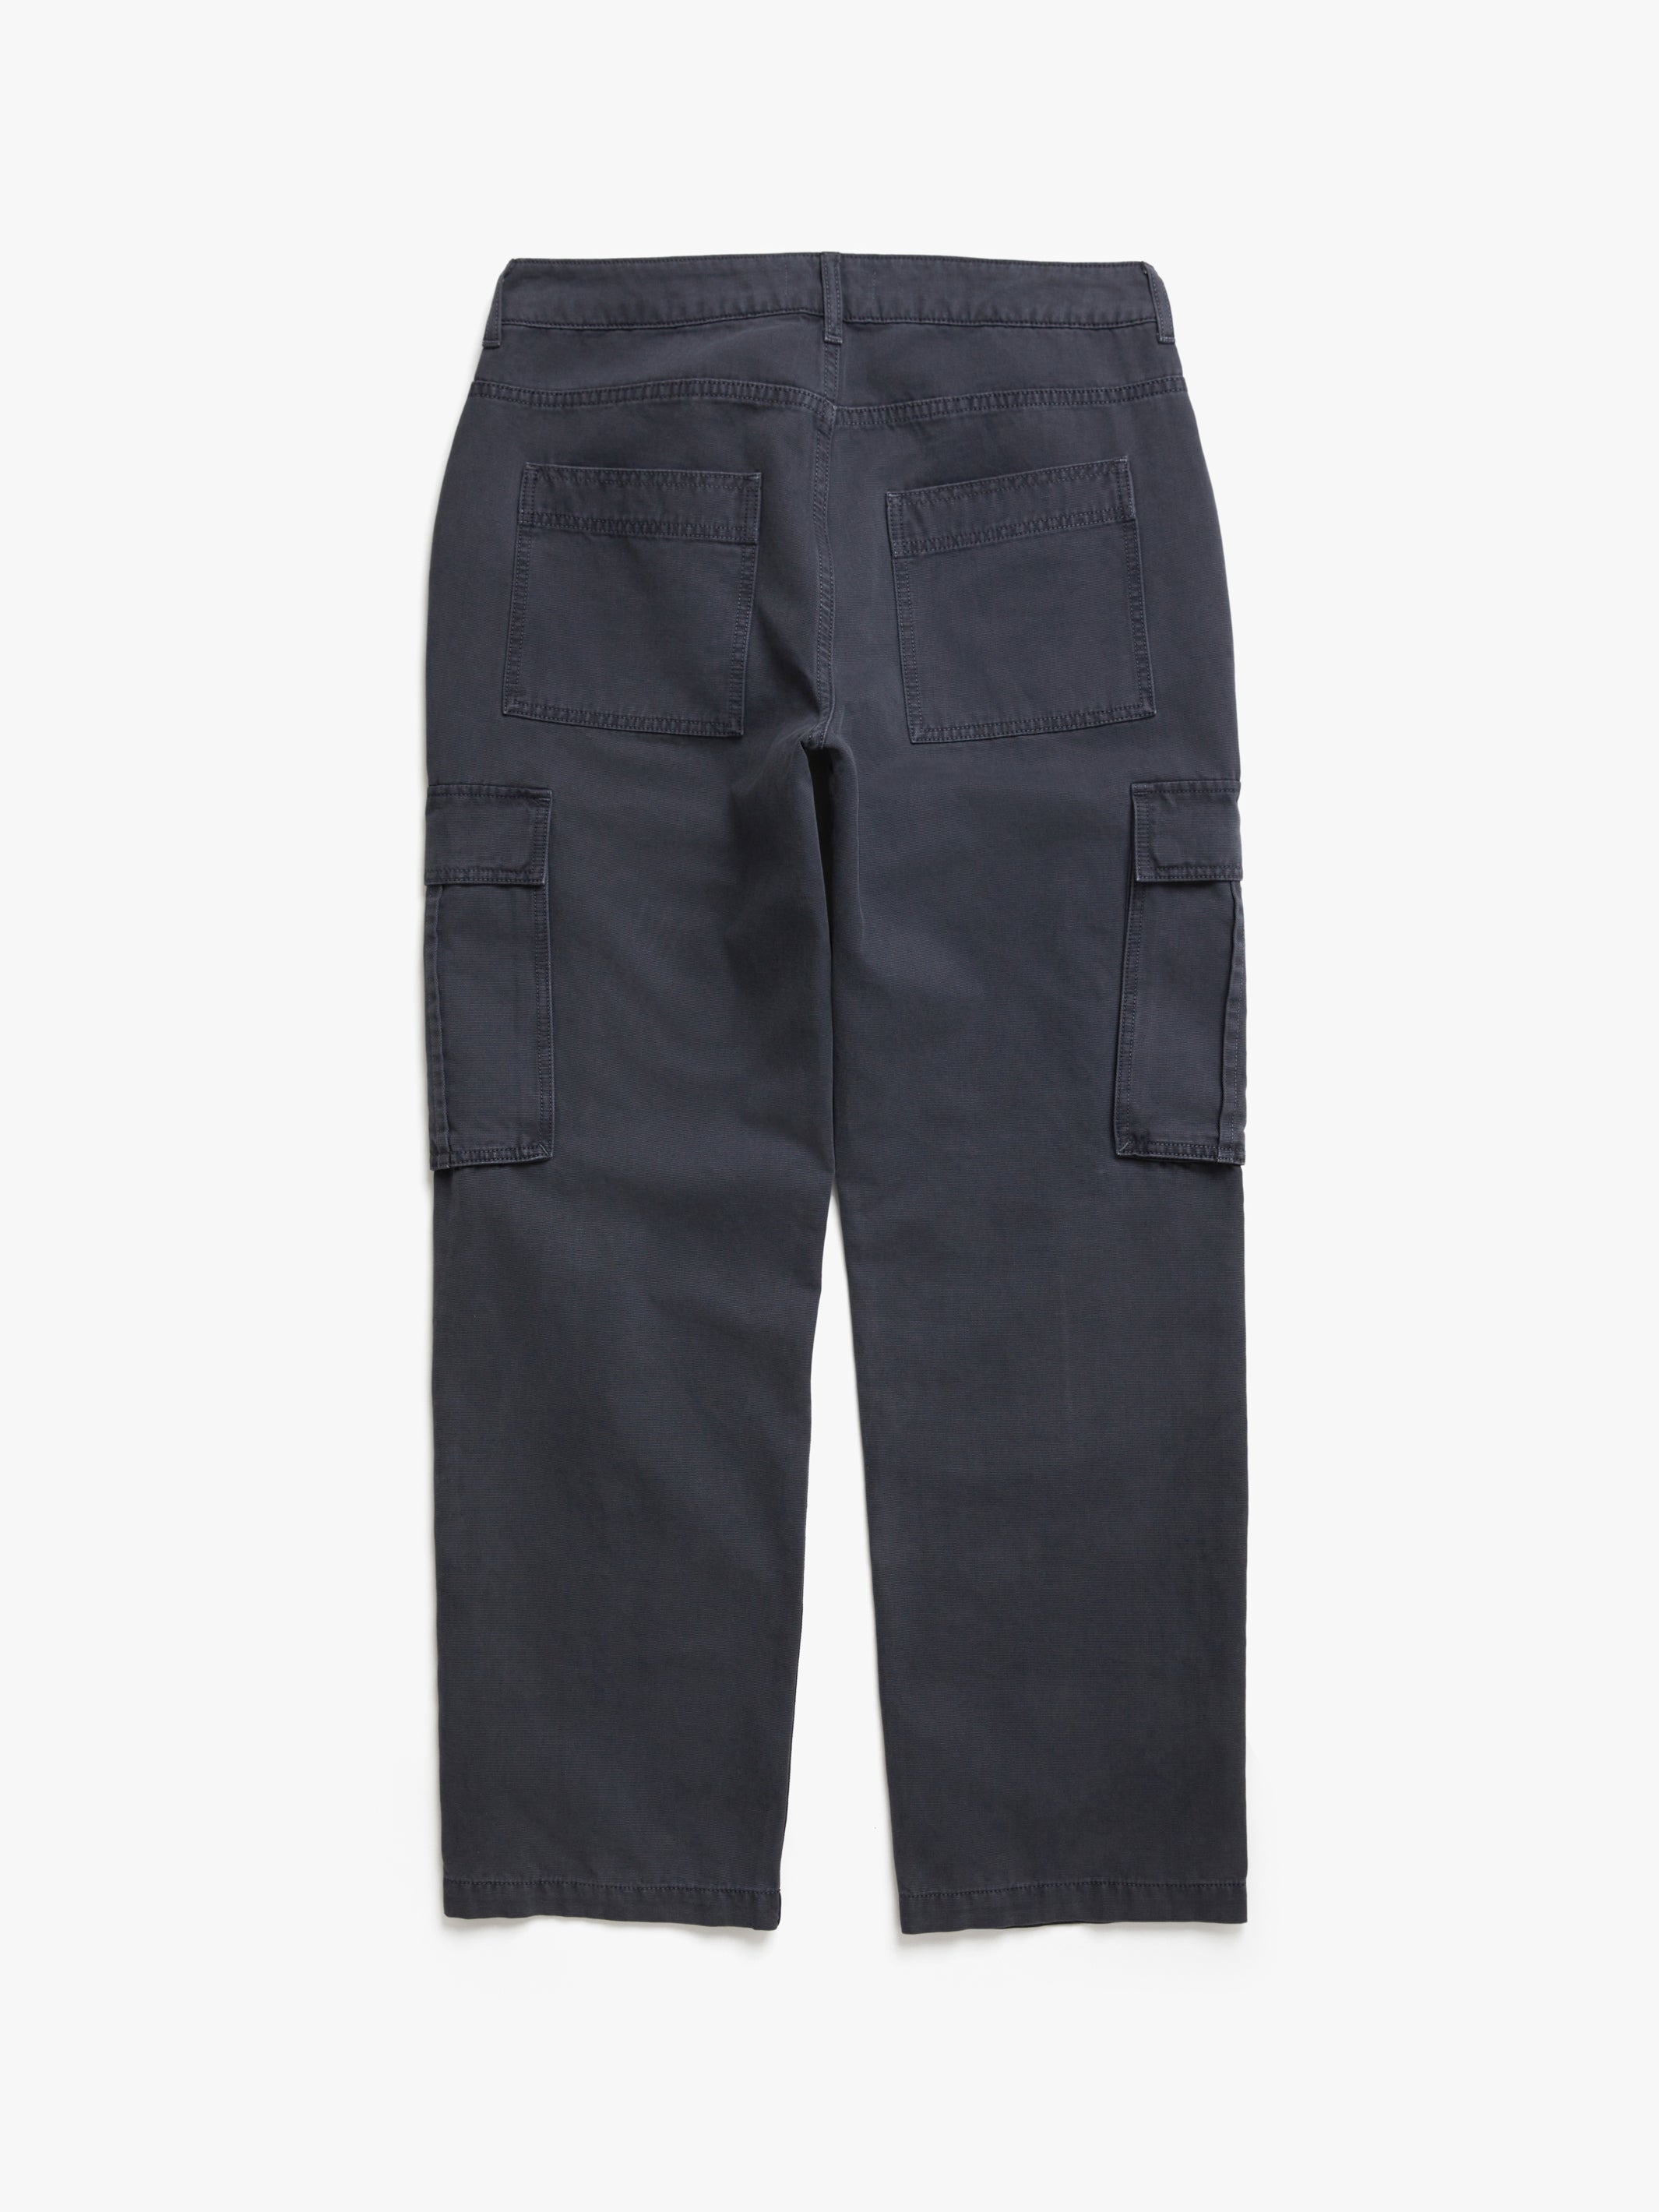 Men's Cargo Pants in Asphalt - BROOKLYN INDUSTRIES